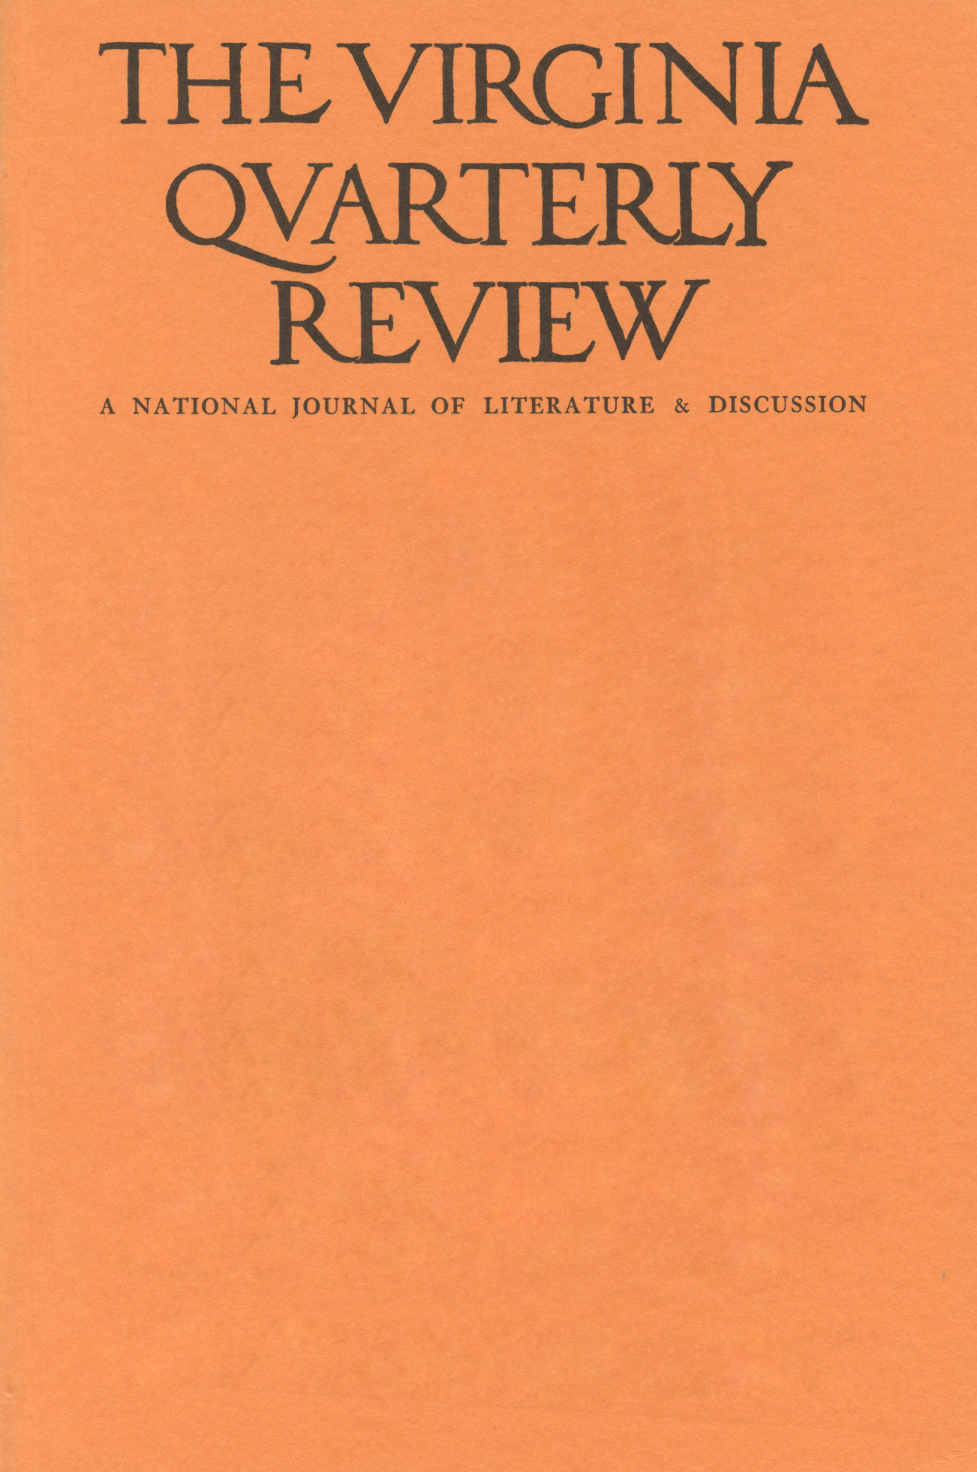 Virginia Quarterly Review, Spring 1953 cover